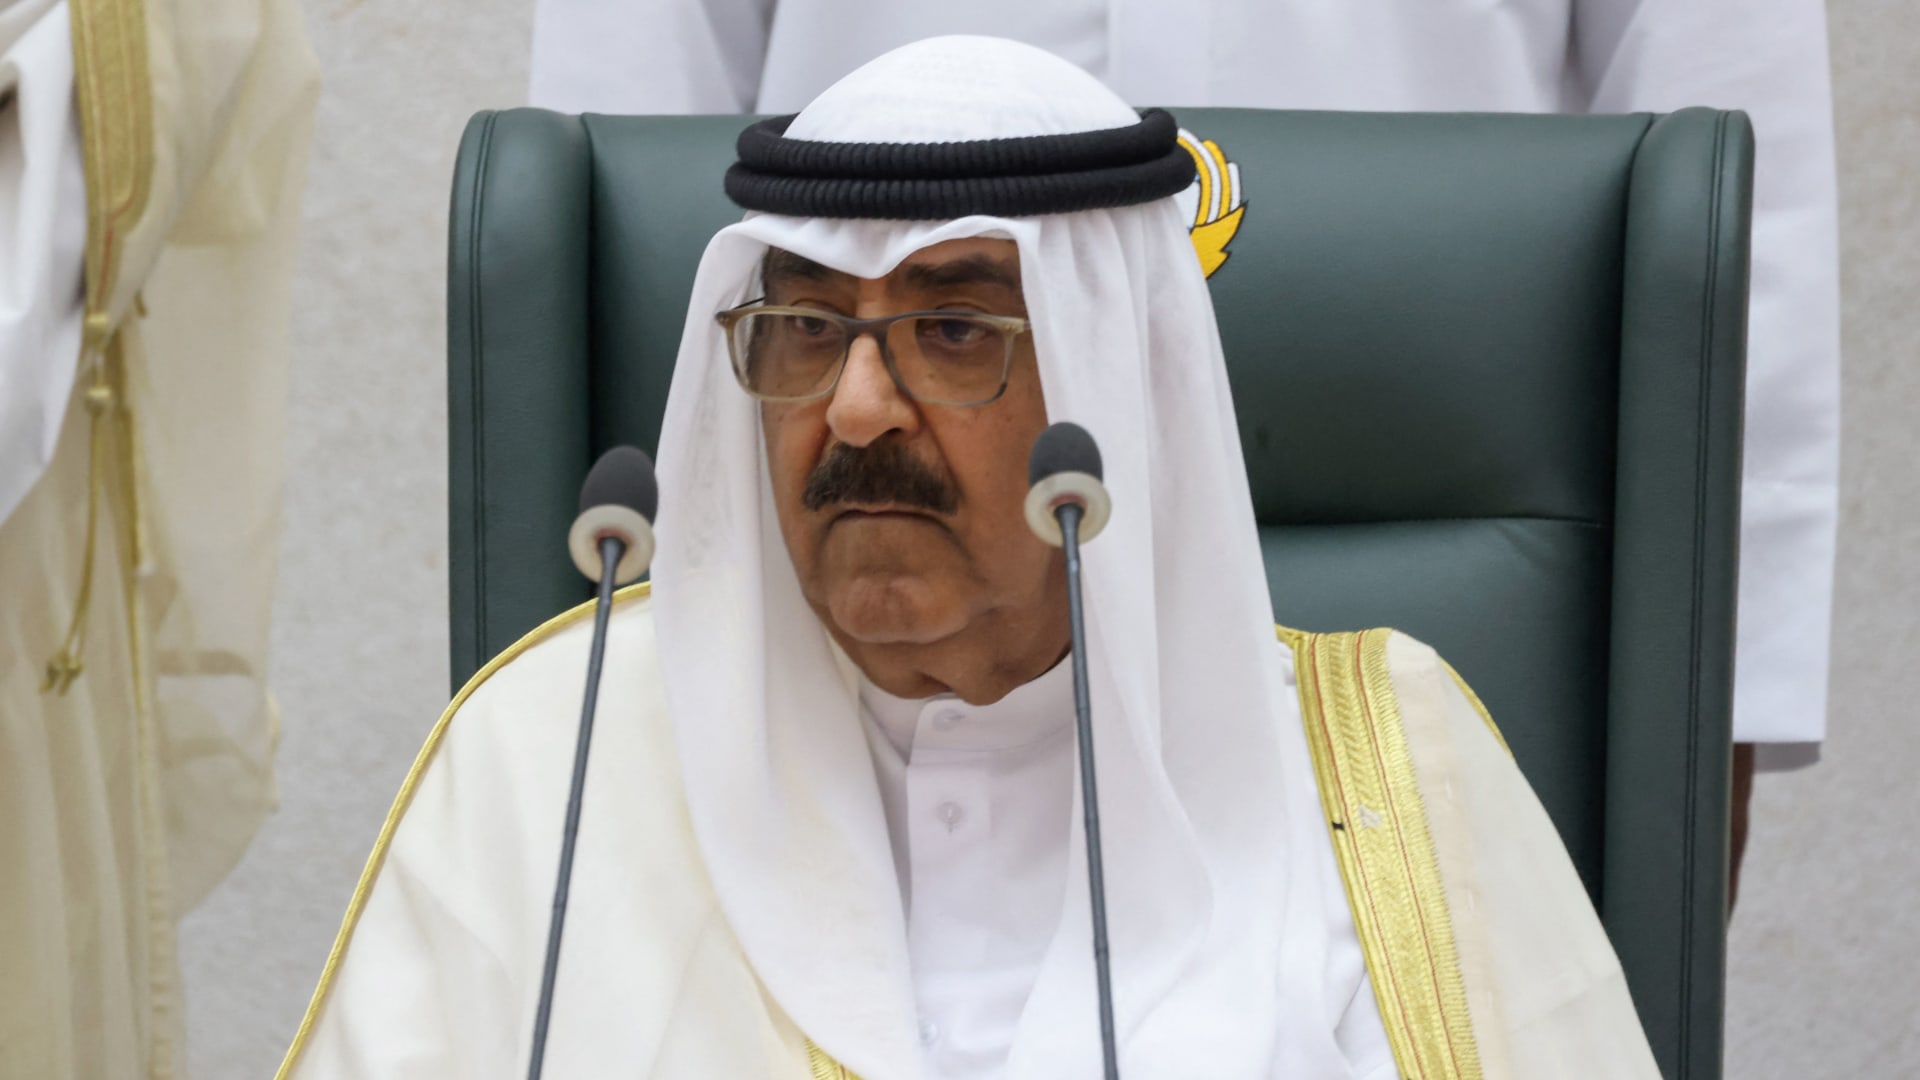 شاهد لحظة إعلان وفاة أمير الكويت الشيخ نواف الأحمد الجابر الصباح